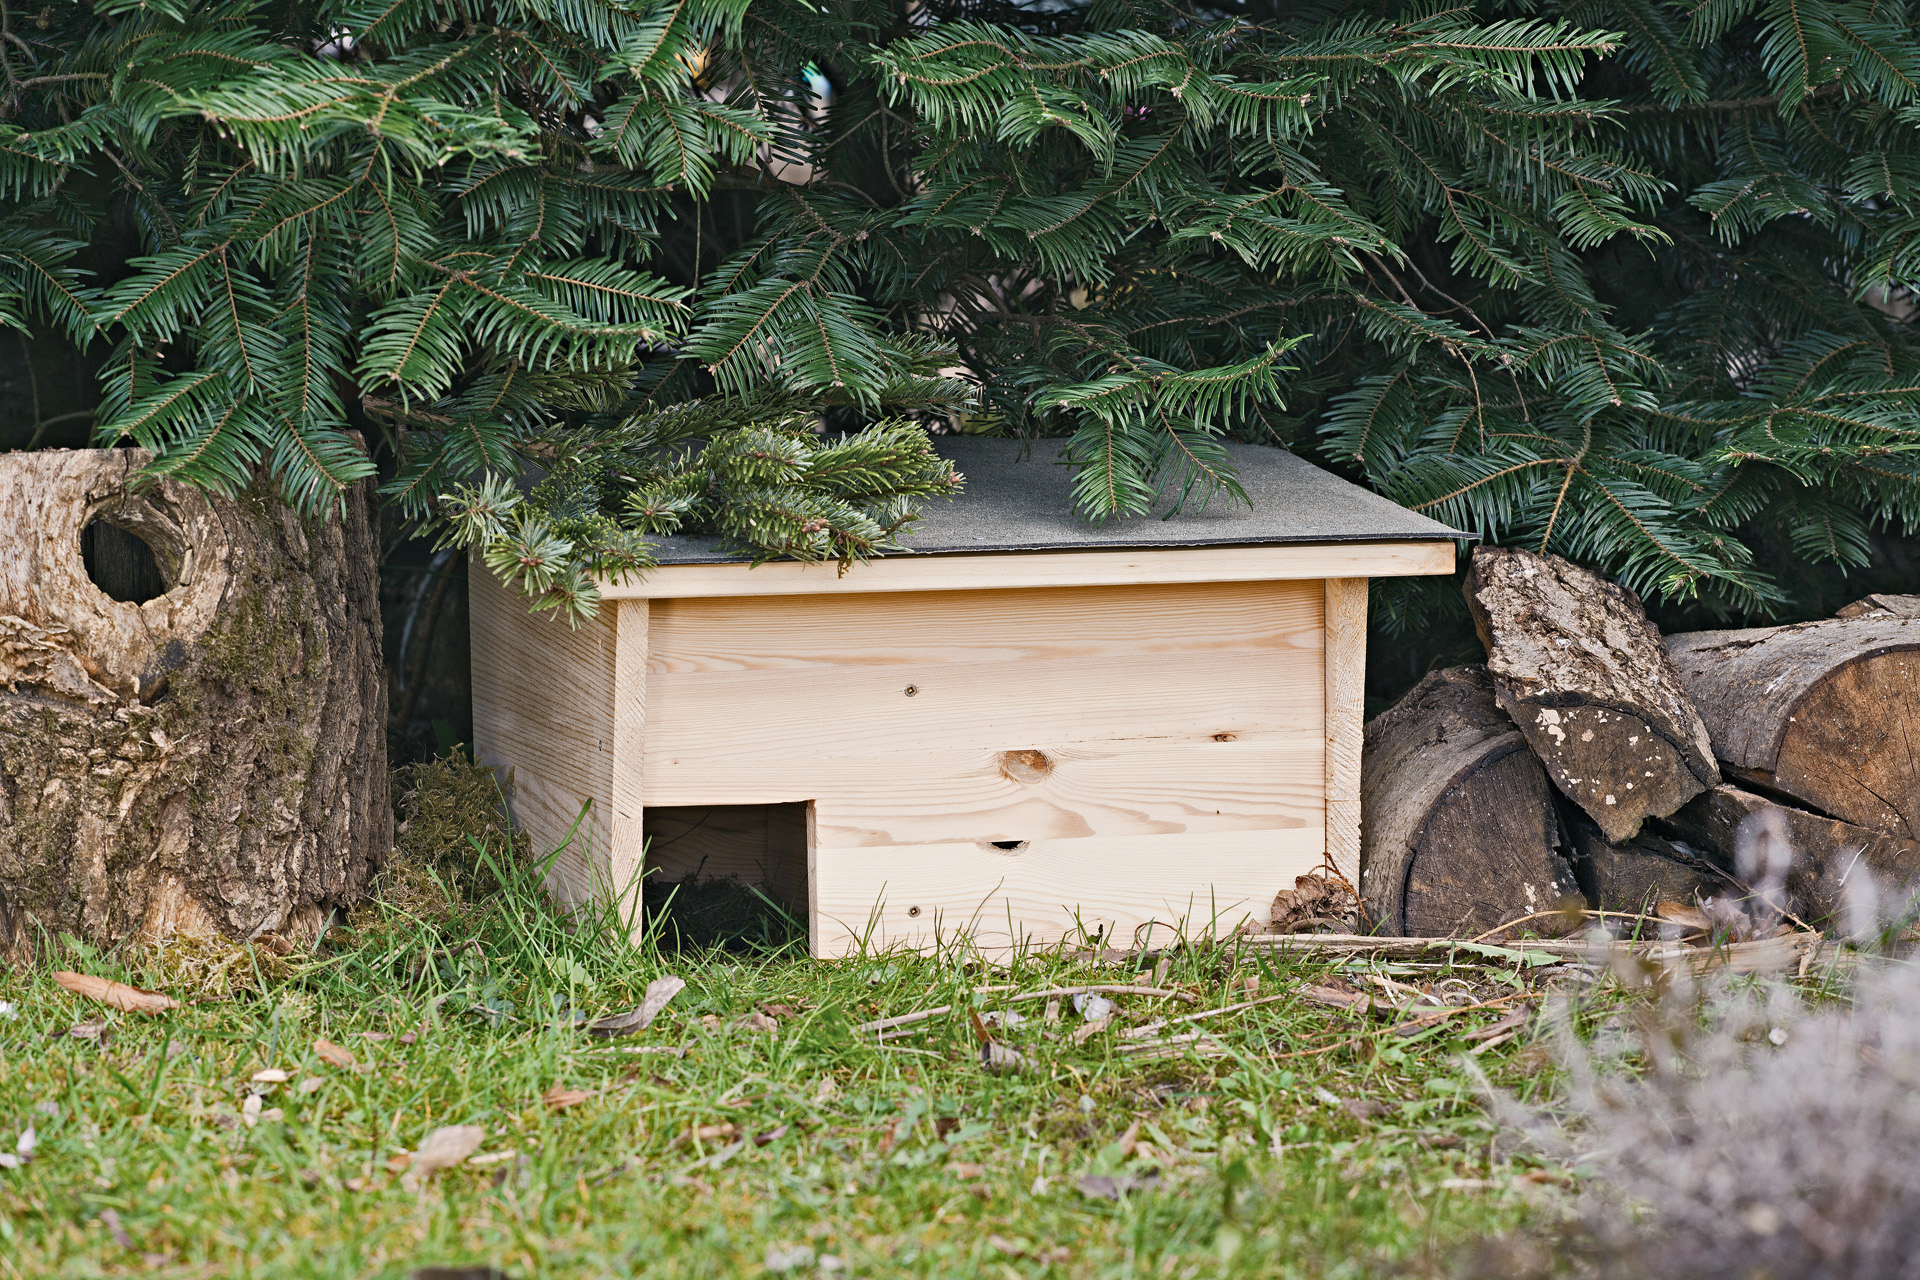 A DIY hedgehog house in a garden under a fir tree